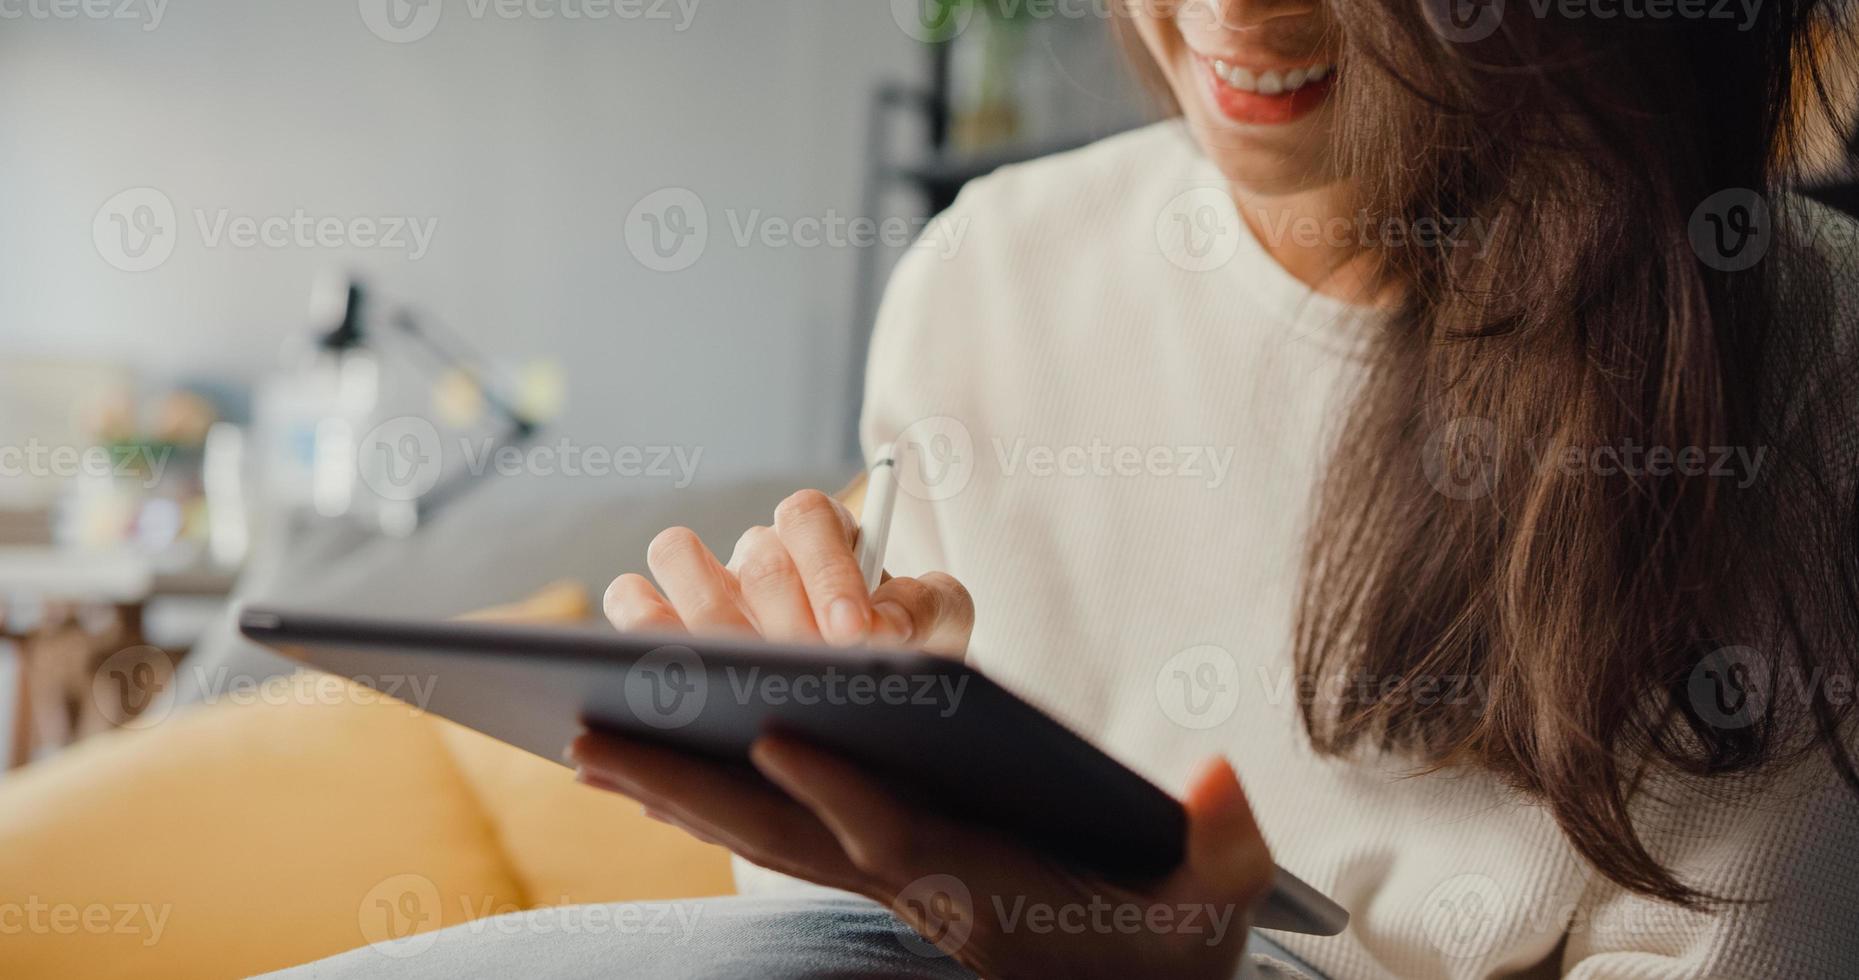 close-up freelance azië dame vrijetijdskleding met behulp van tablet online leren in de woonkamer thuis. thuiswerken, werken op afstand, onderwijs op afstand, sociale afstand, quarantaine voor preventie van het coronavirus. foto